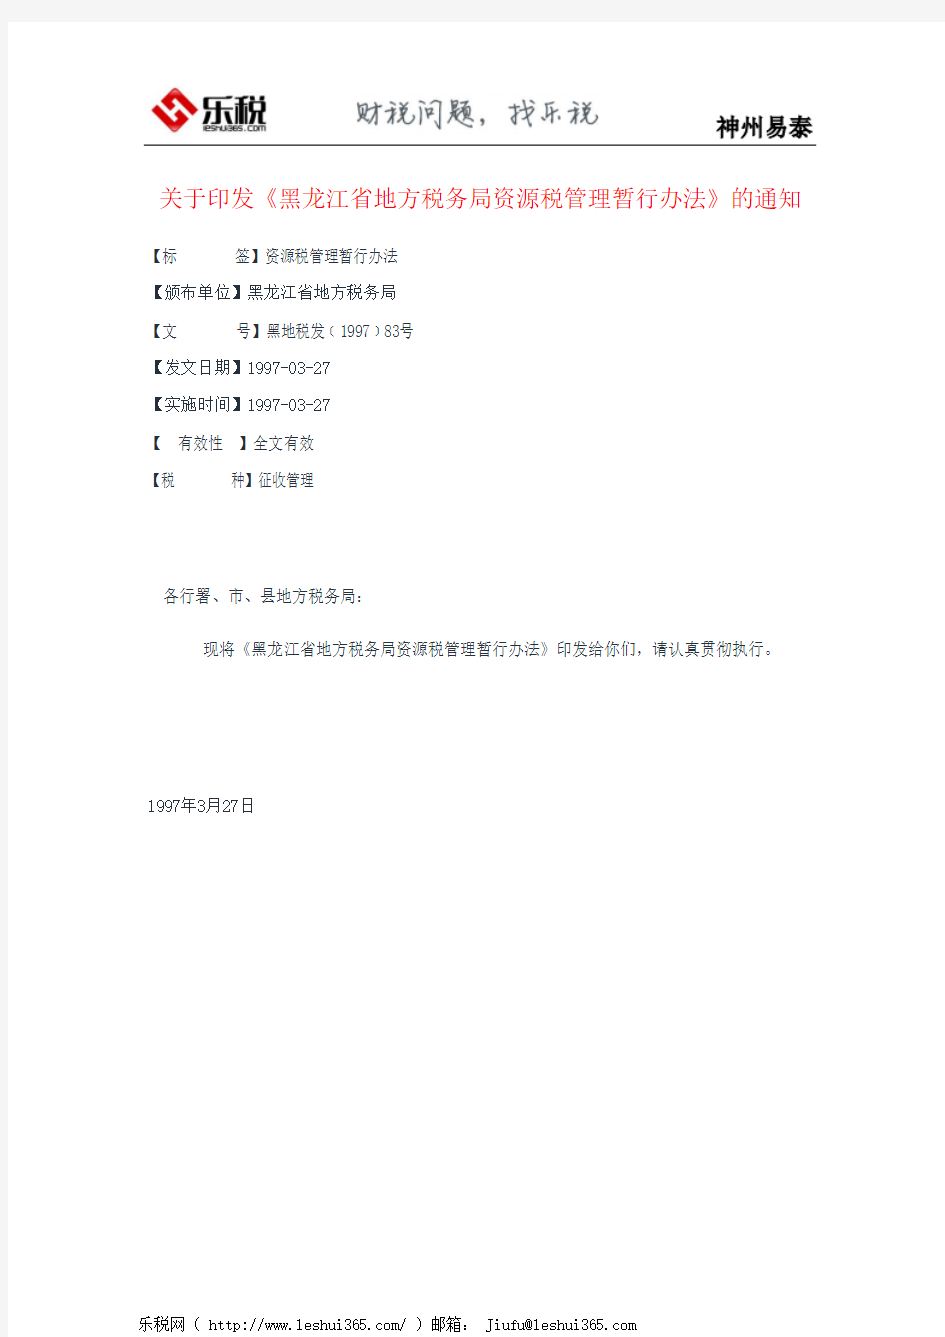 关于印发《黑龙江省地方税务局资源税管理暂行办法》的通知